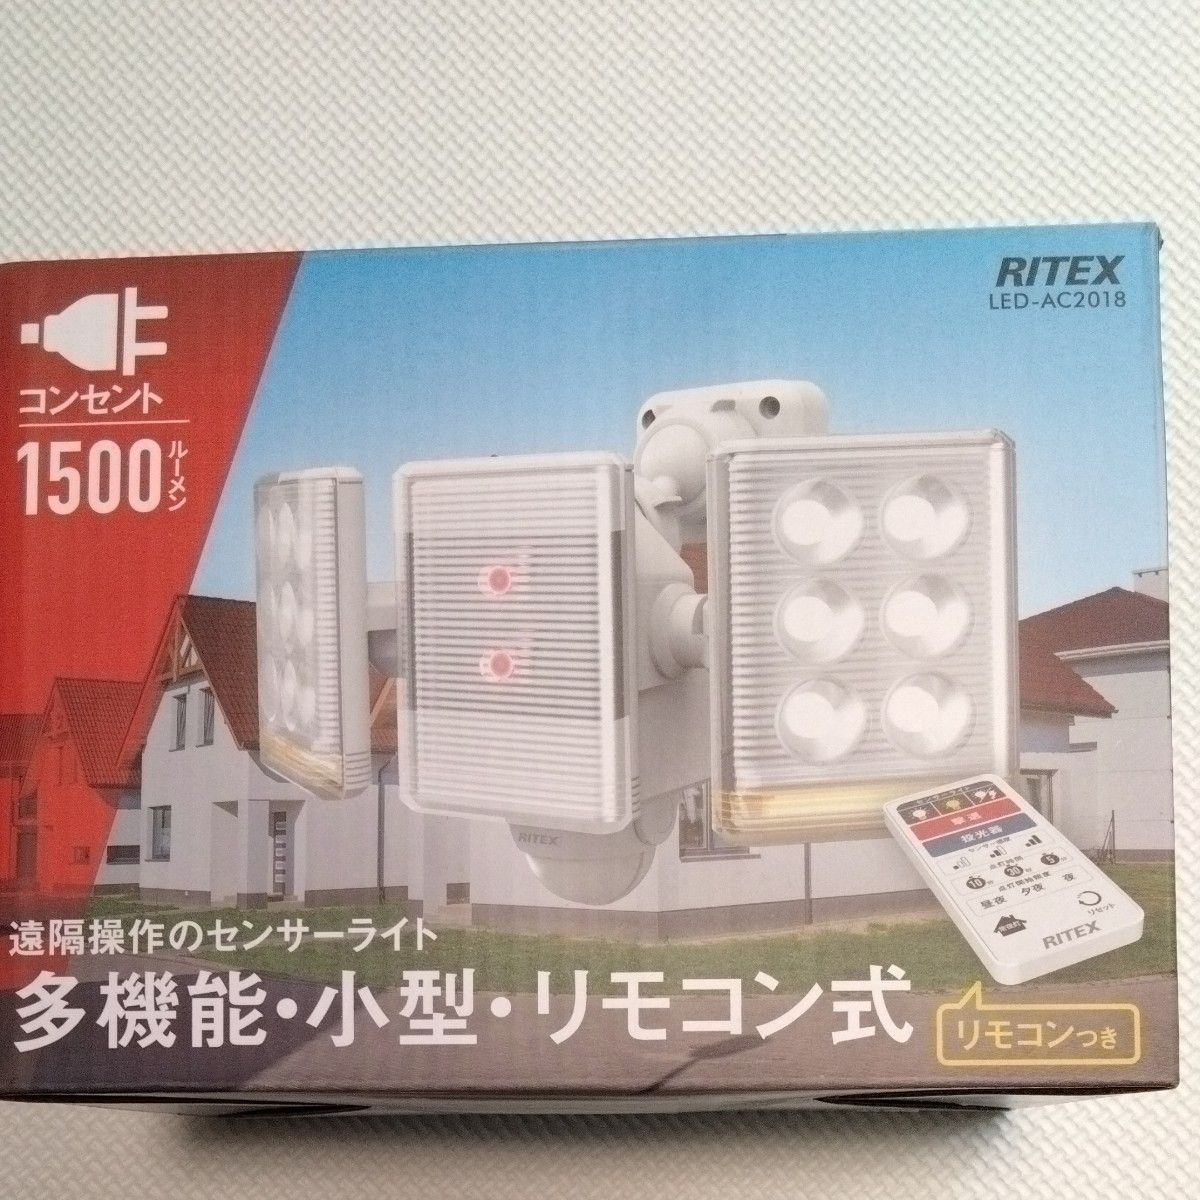 ムサシ 9W×2灯 フリーアーム式LEDセンサーライト リモコン付 LED-AC2018 屋内屋外用 (防雨タイプ I